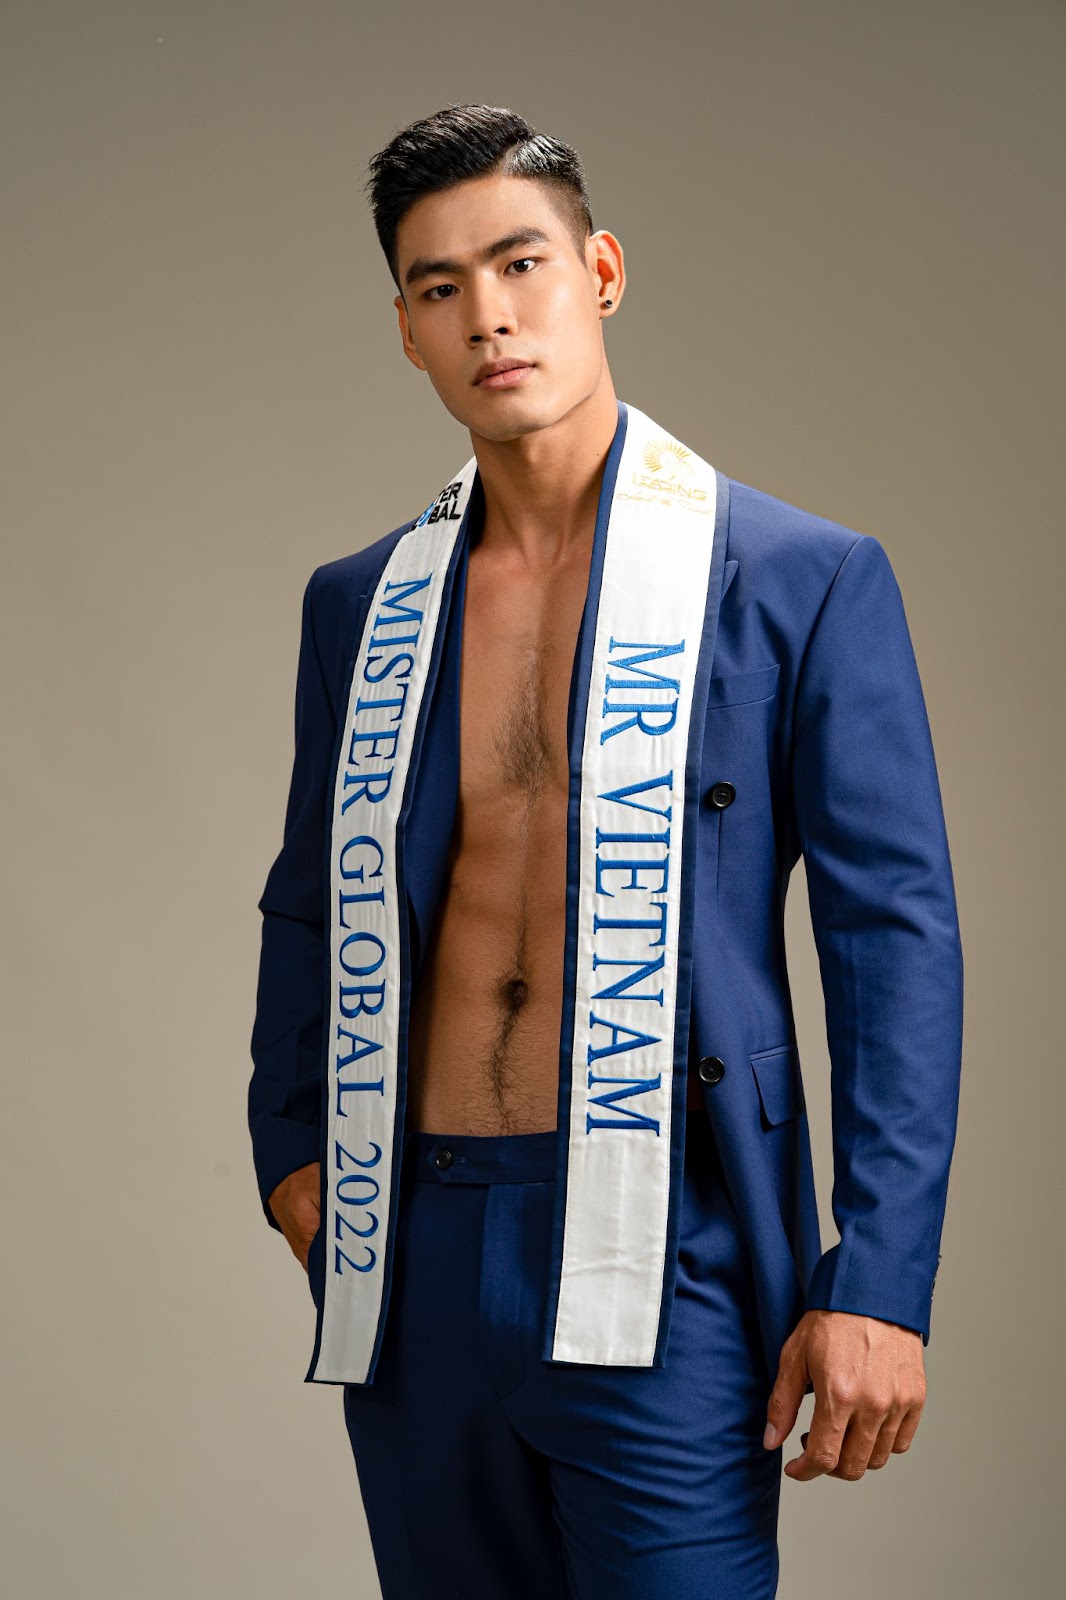 Gặp sự cố khi trình diễn trang phục dân tộc, Danh Chiếu Linh bất ngờ đăng quang ngôi vị Á vương 1 Mister Global mùa thứ 7 - Hình 4